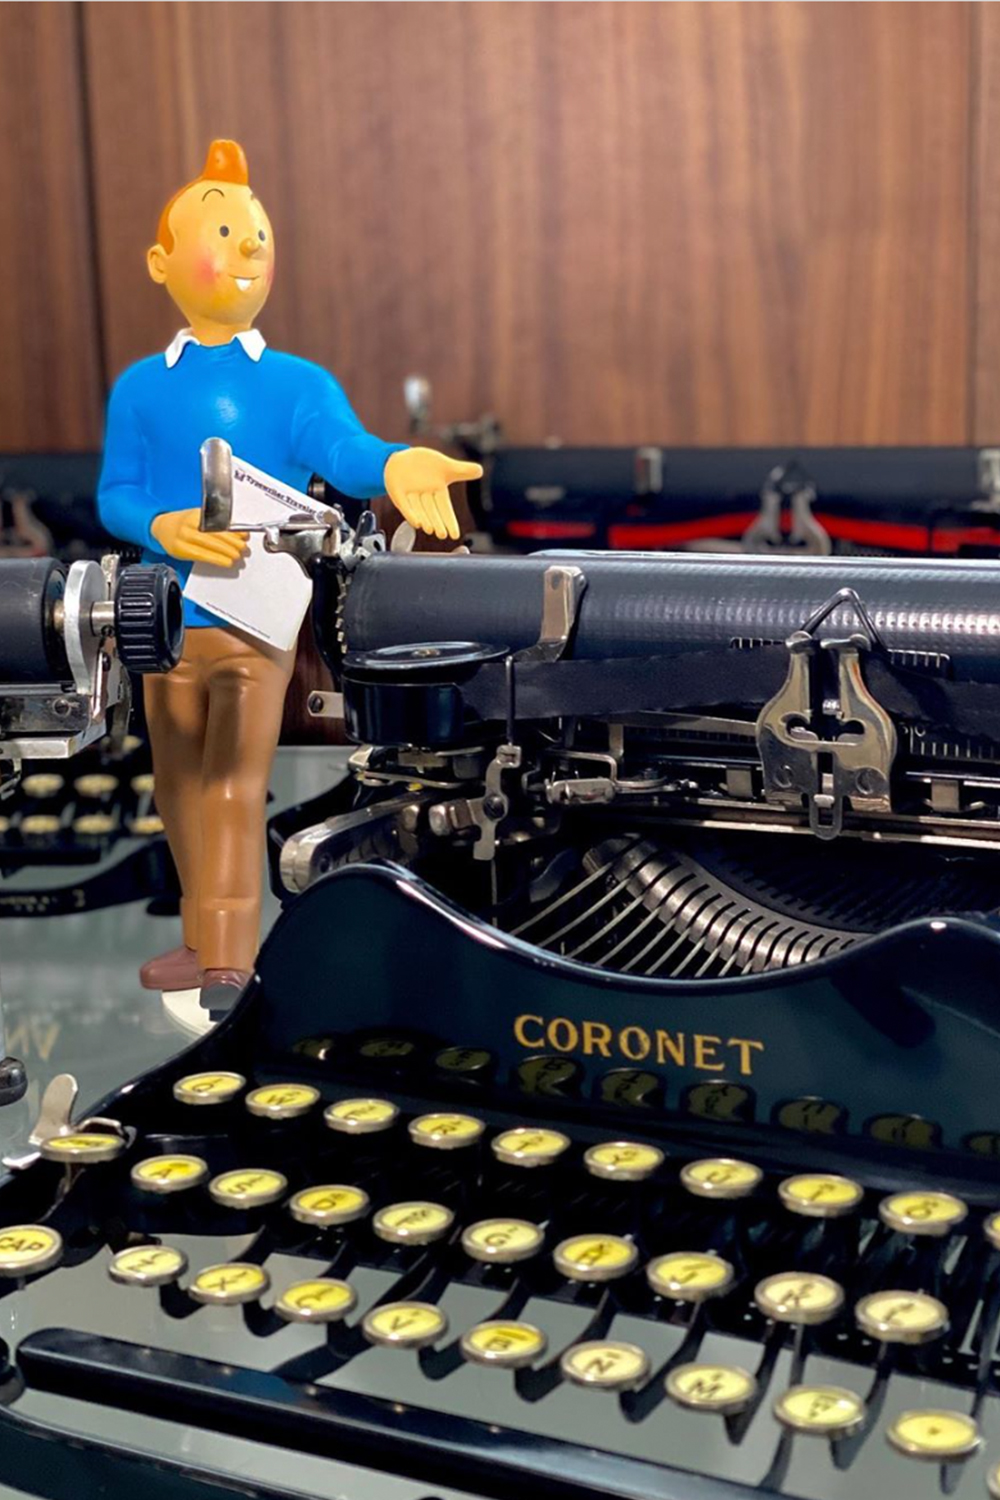 typewriter traveler